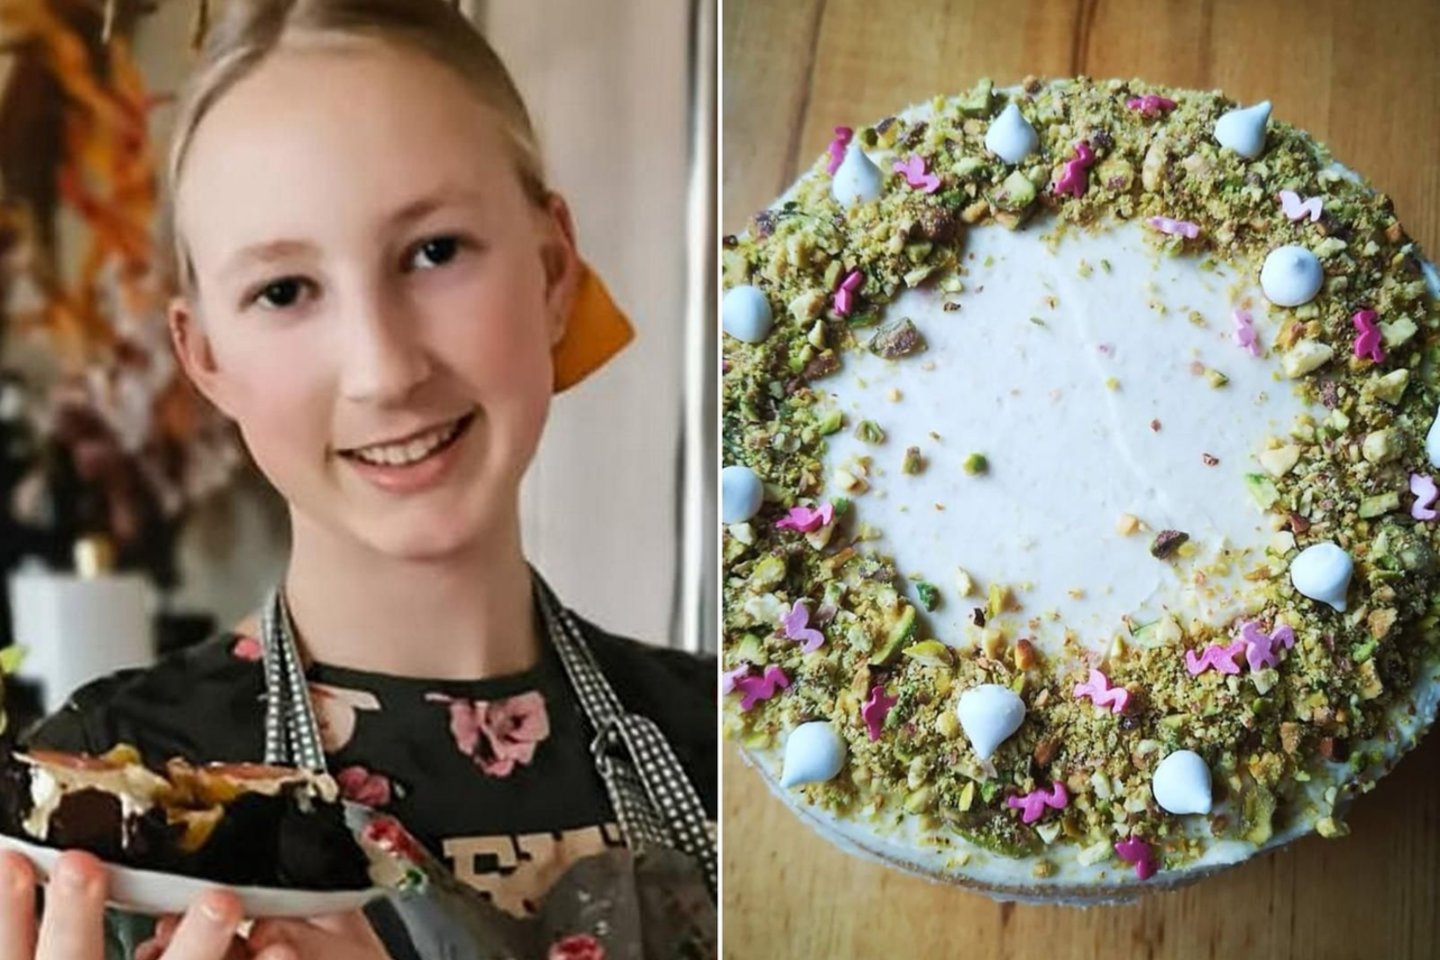 Pyragus Justė viena pati kepa jau nuo 8-erių, o dabar praktikuojasi gamindama tortus.<br>Nuotr. iš zemaiciolaikrastis.lt.